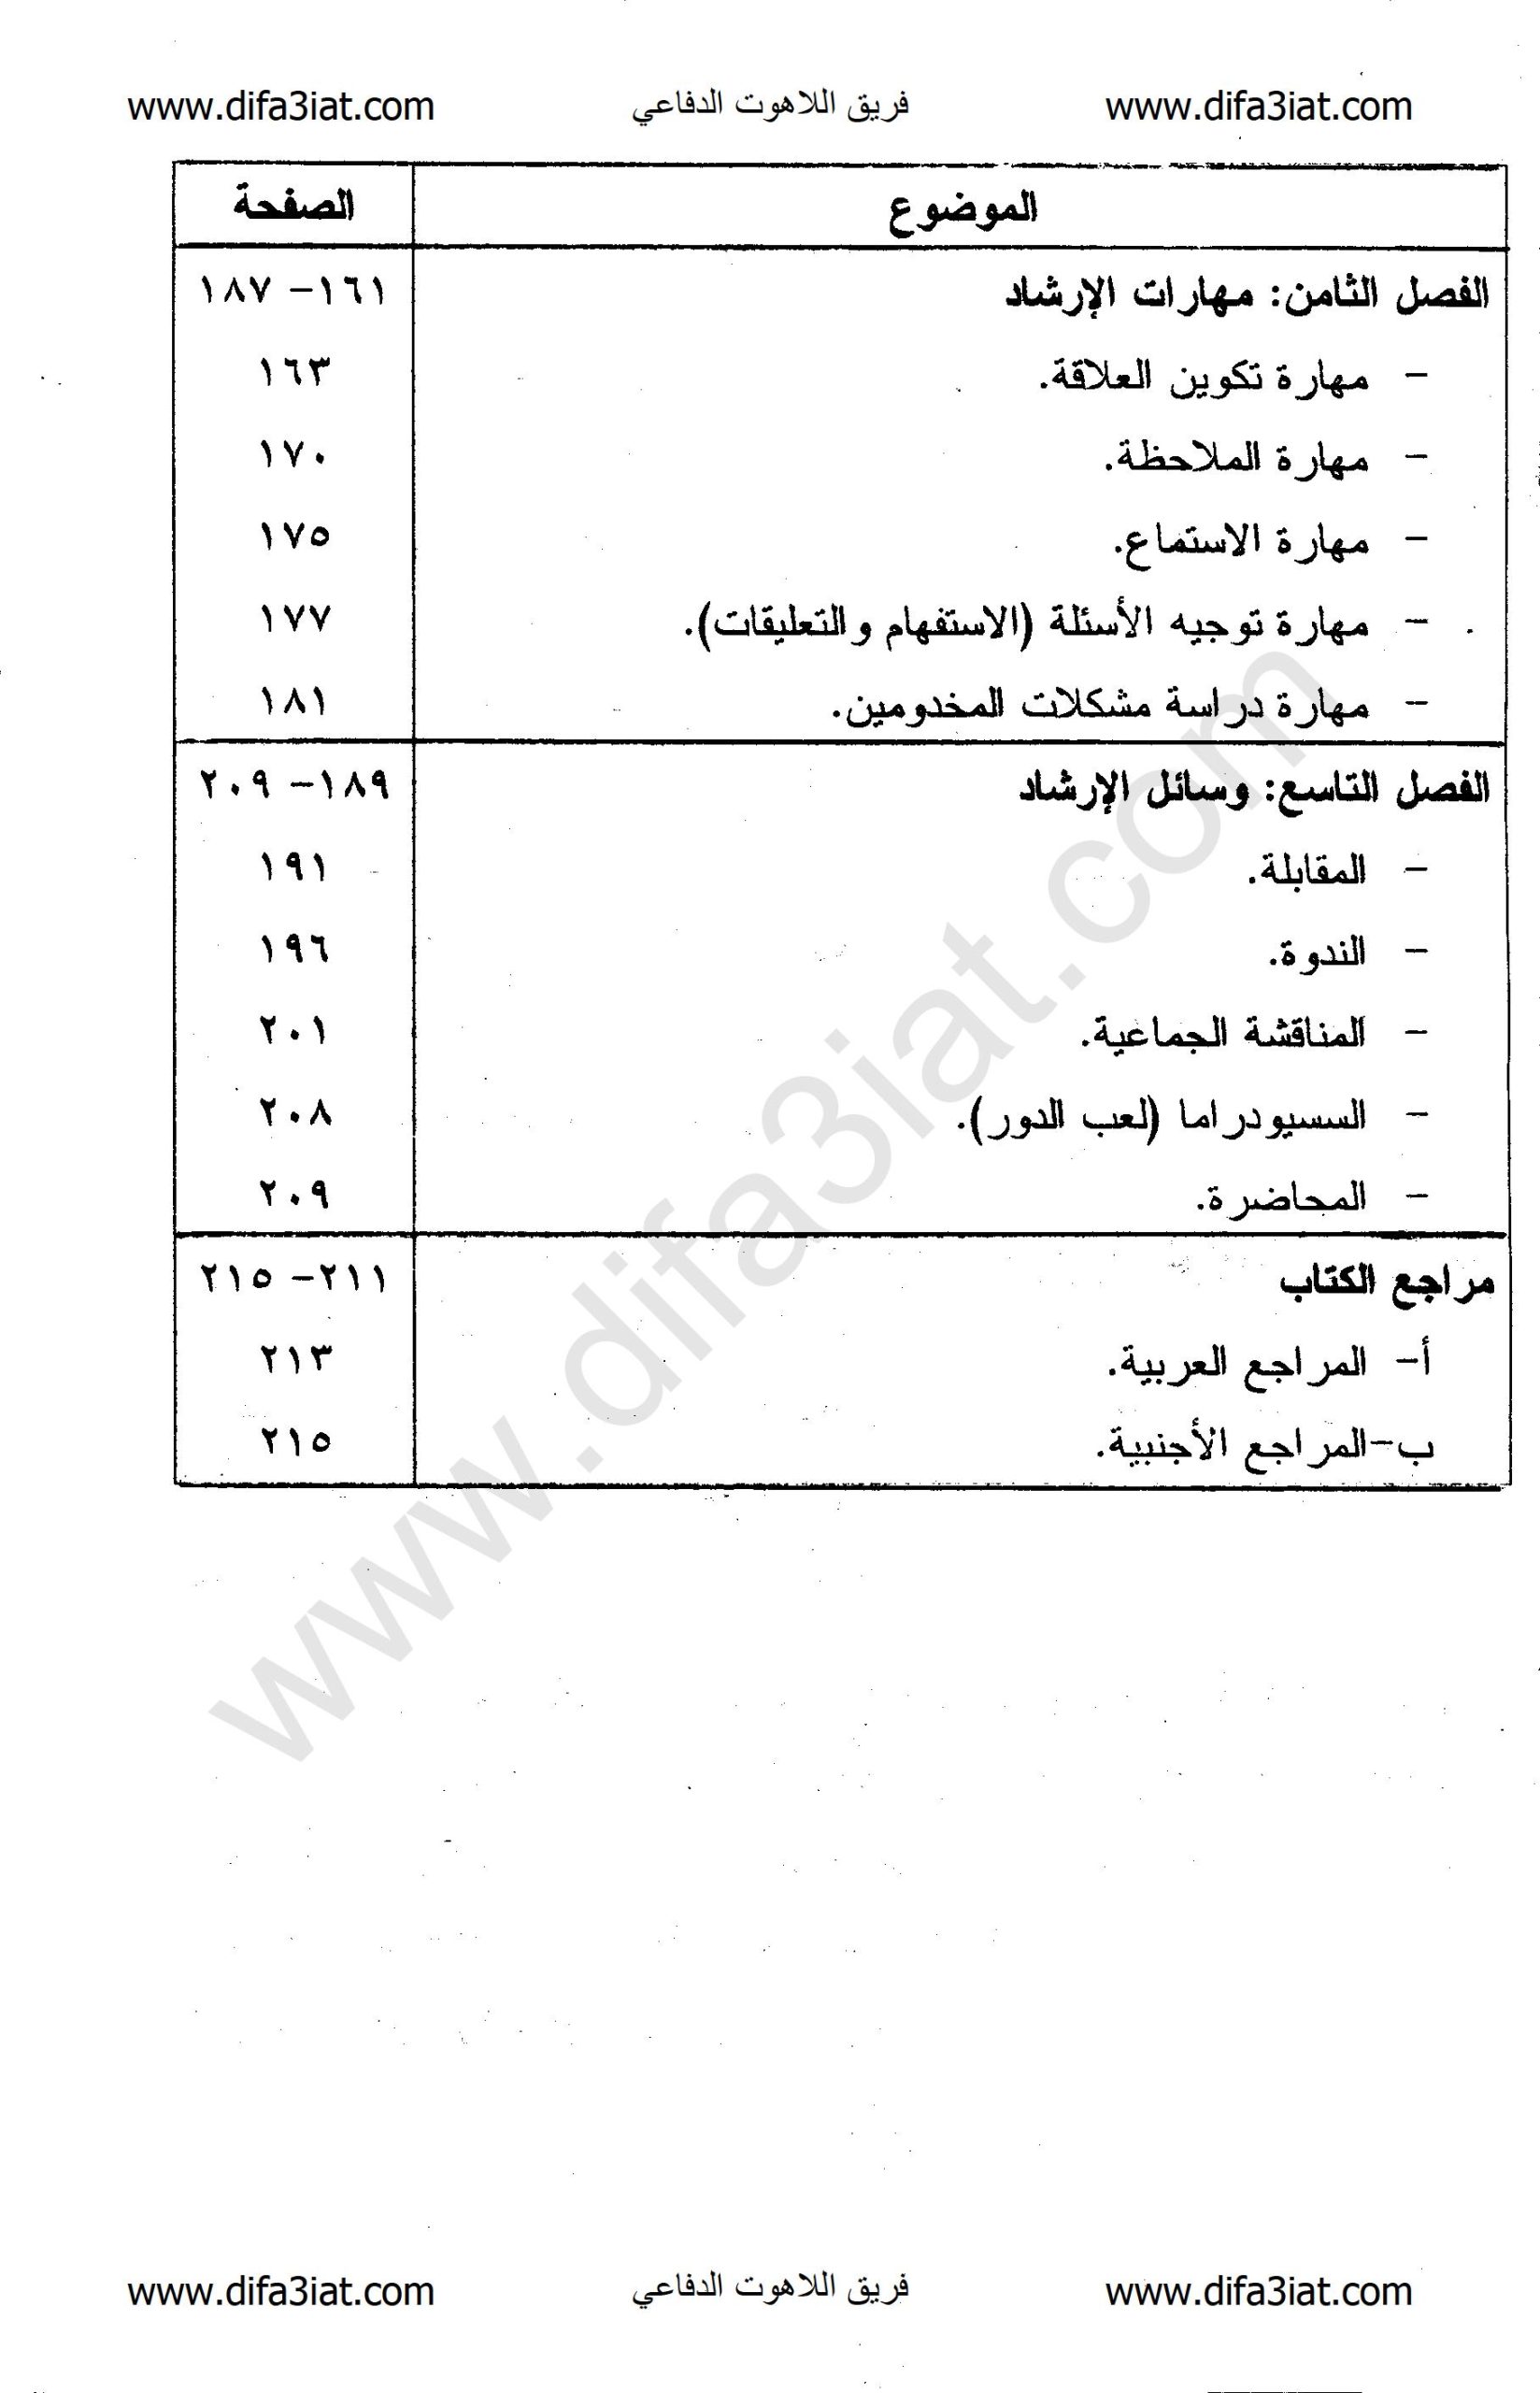 كتاب الارشاد الكنسي PDF أسس نظرية وتطبيقات عملية - د. جمال شحاتة حبيب